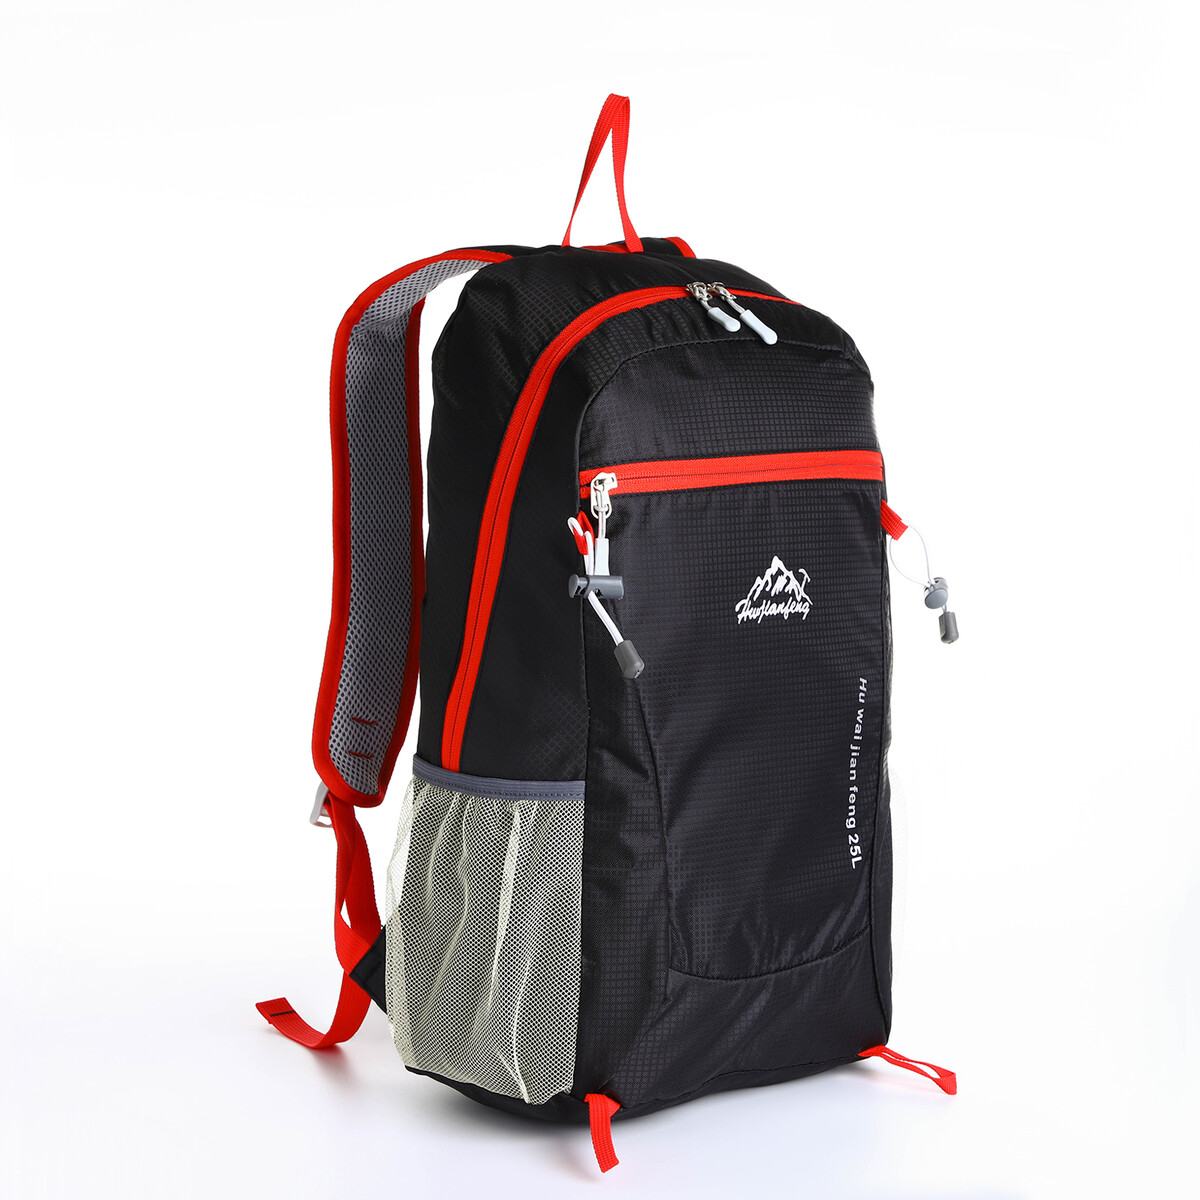 Рюкзак туристический 25л, складной, водонепроницаемый, на молнии, 4 кармана, цвет черный рюкзак складной отдел на молнии наружный карман 2 боковых кармана зеленый